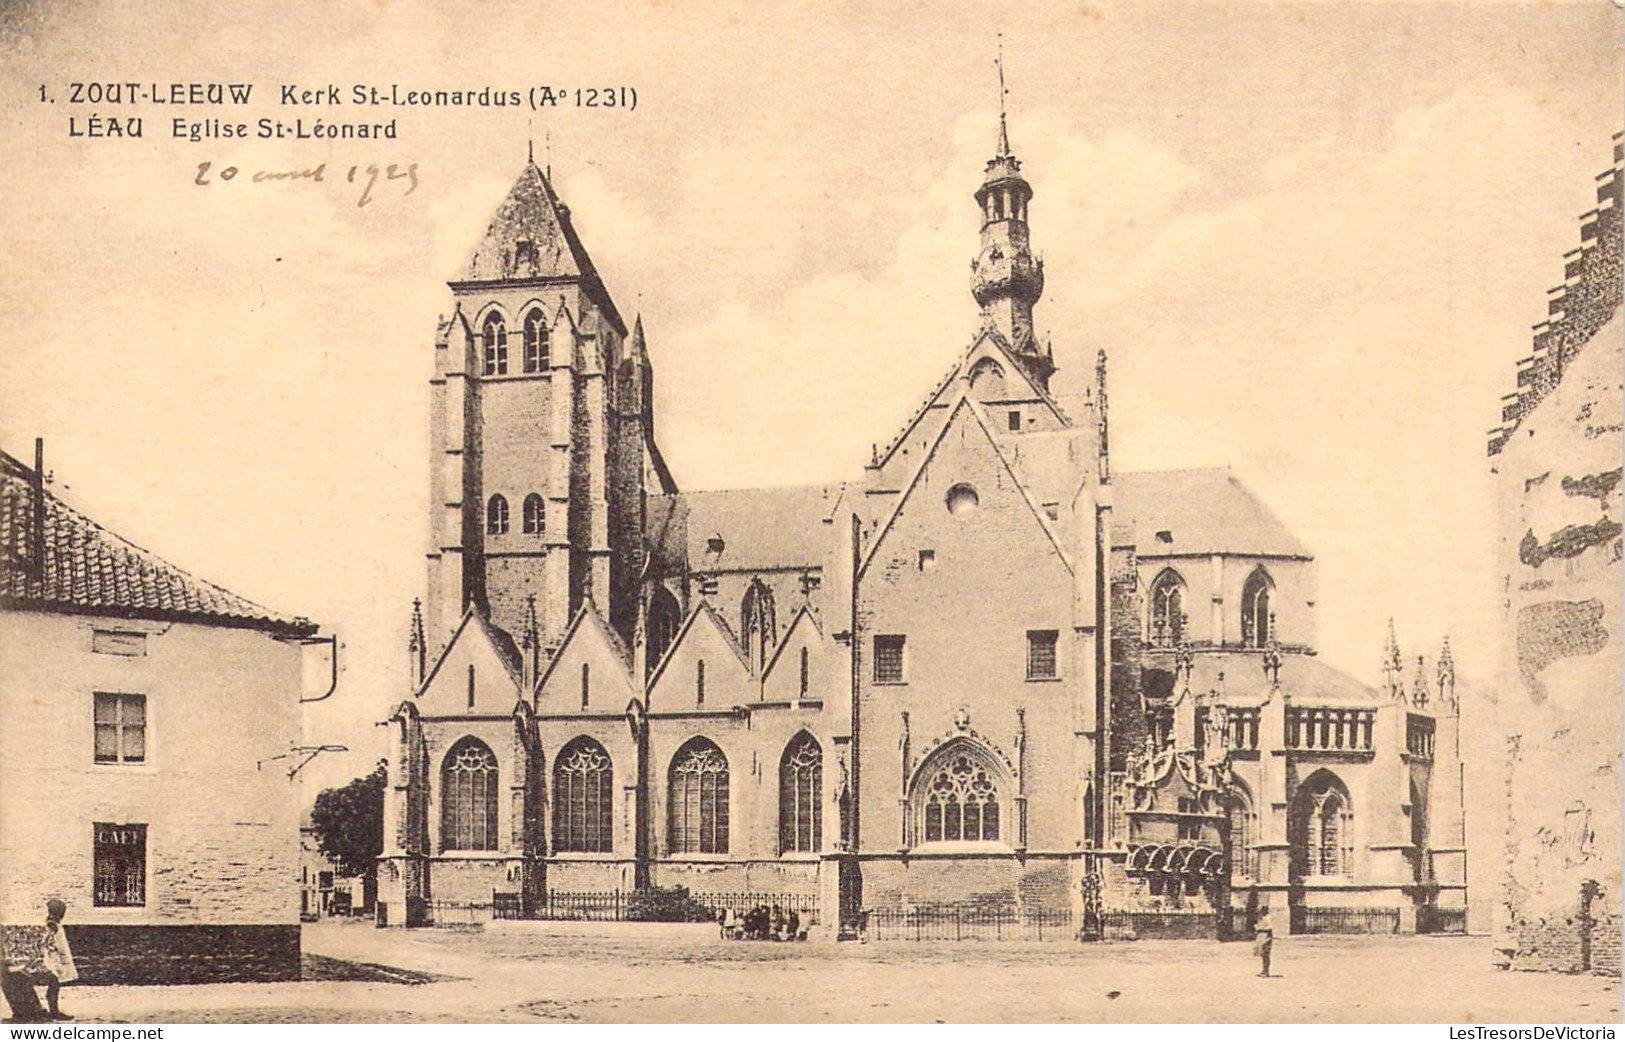 BELGIQUE - ZOUTLEEUW - Kerk St Leonardus - 2glise St Léonard - Carte Postale Ancienne - Zoutleeuw